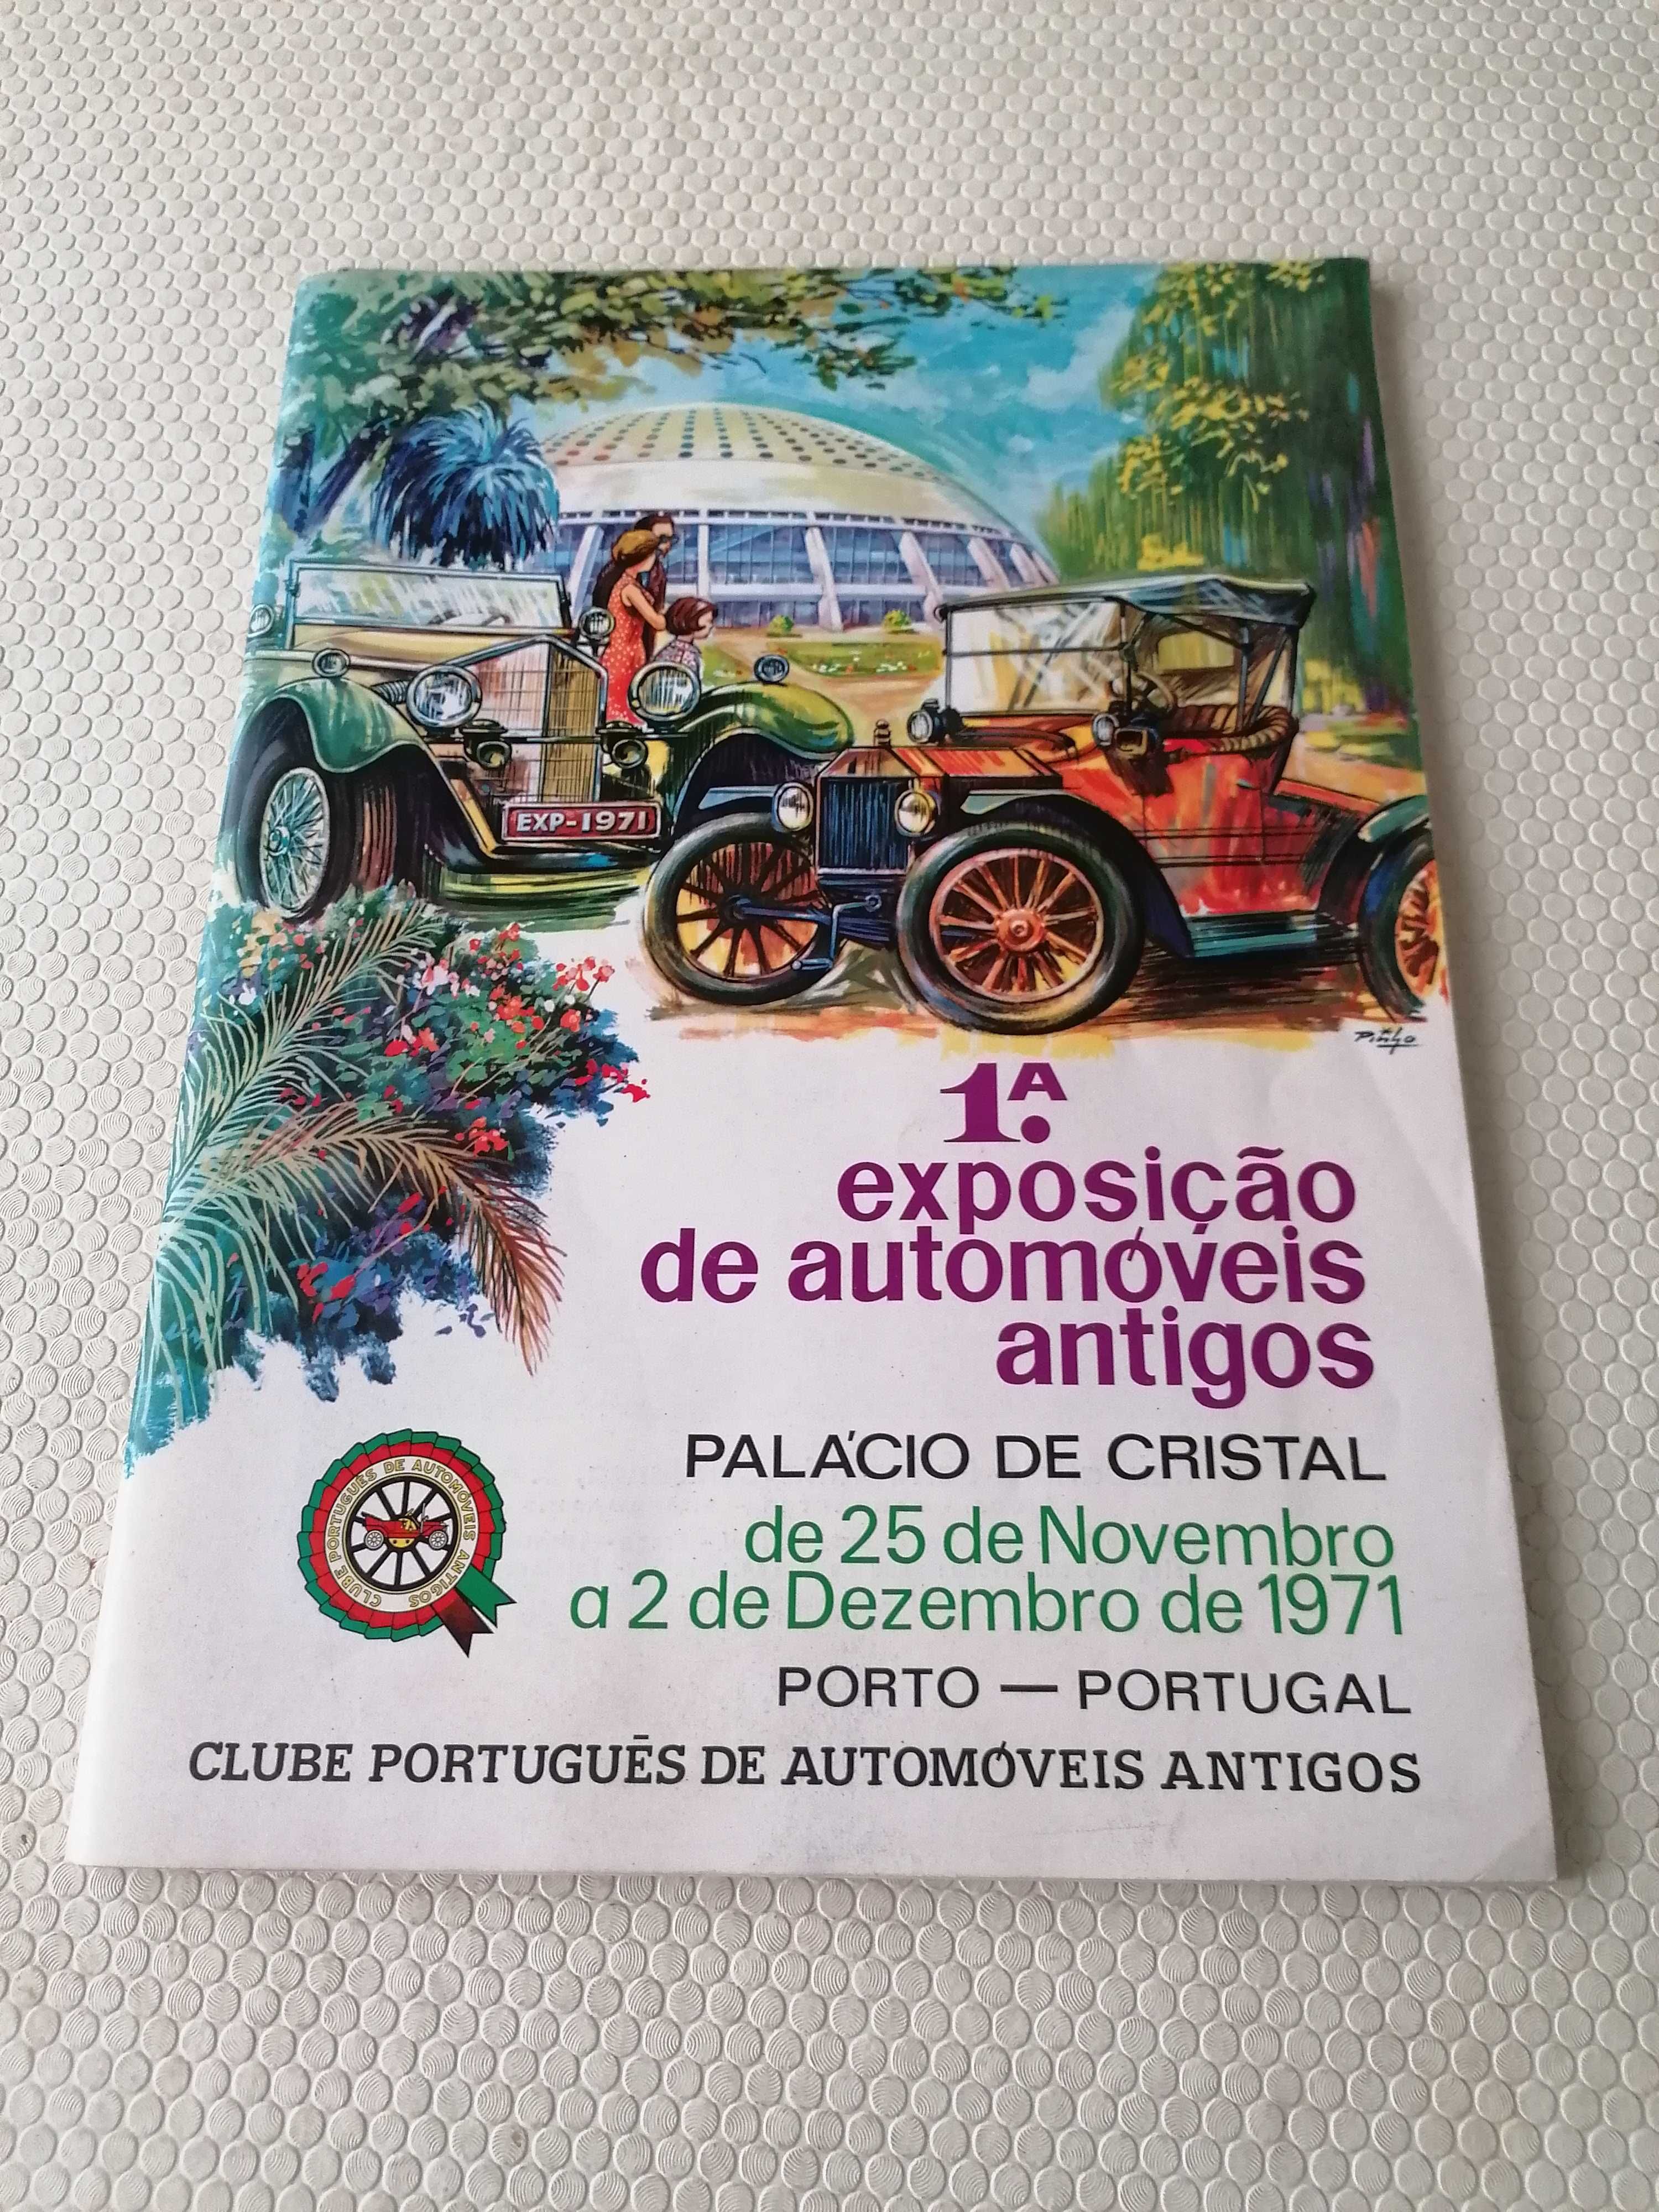 1.° Exposição de Automóveis Antigos - Palácio de Cristal - Porto 1971